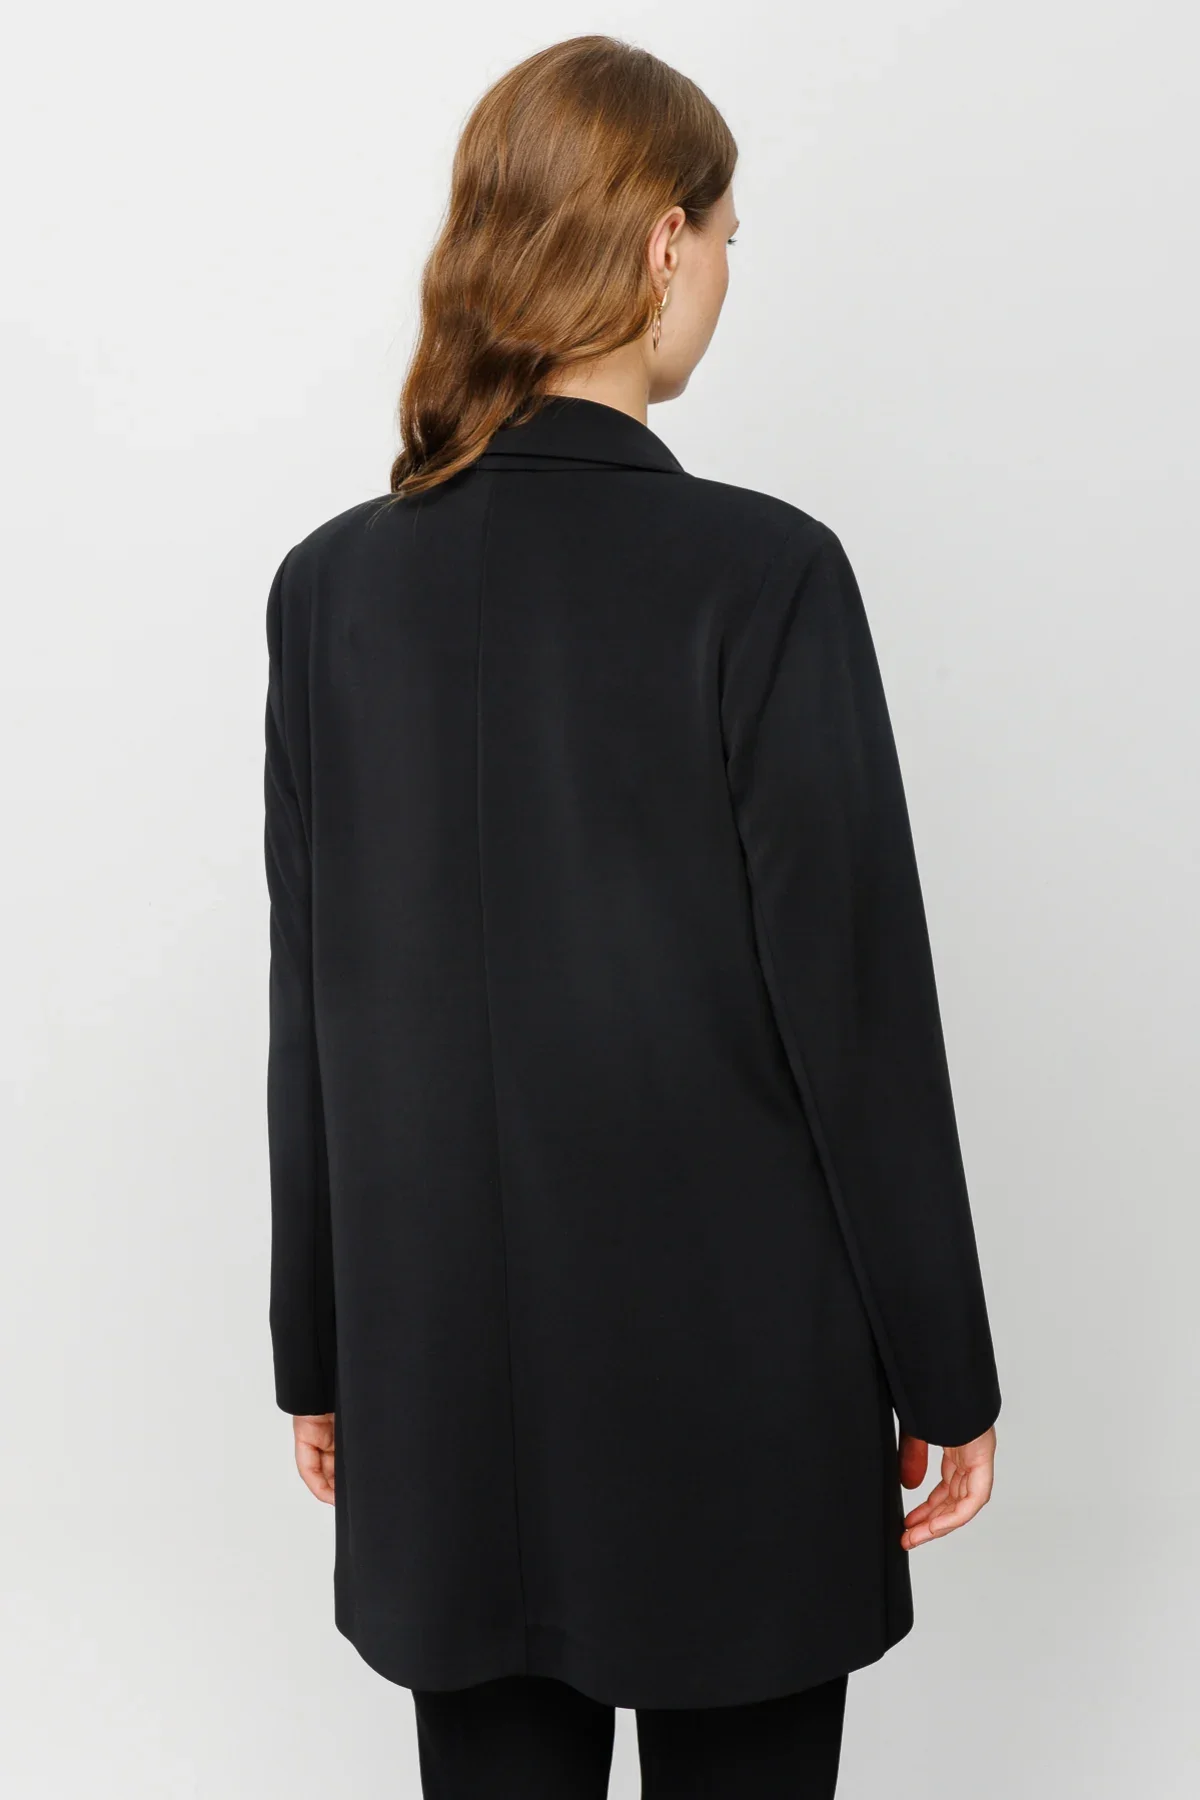 Kadın Uzun Blazer Ceket - Siyah - 5